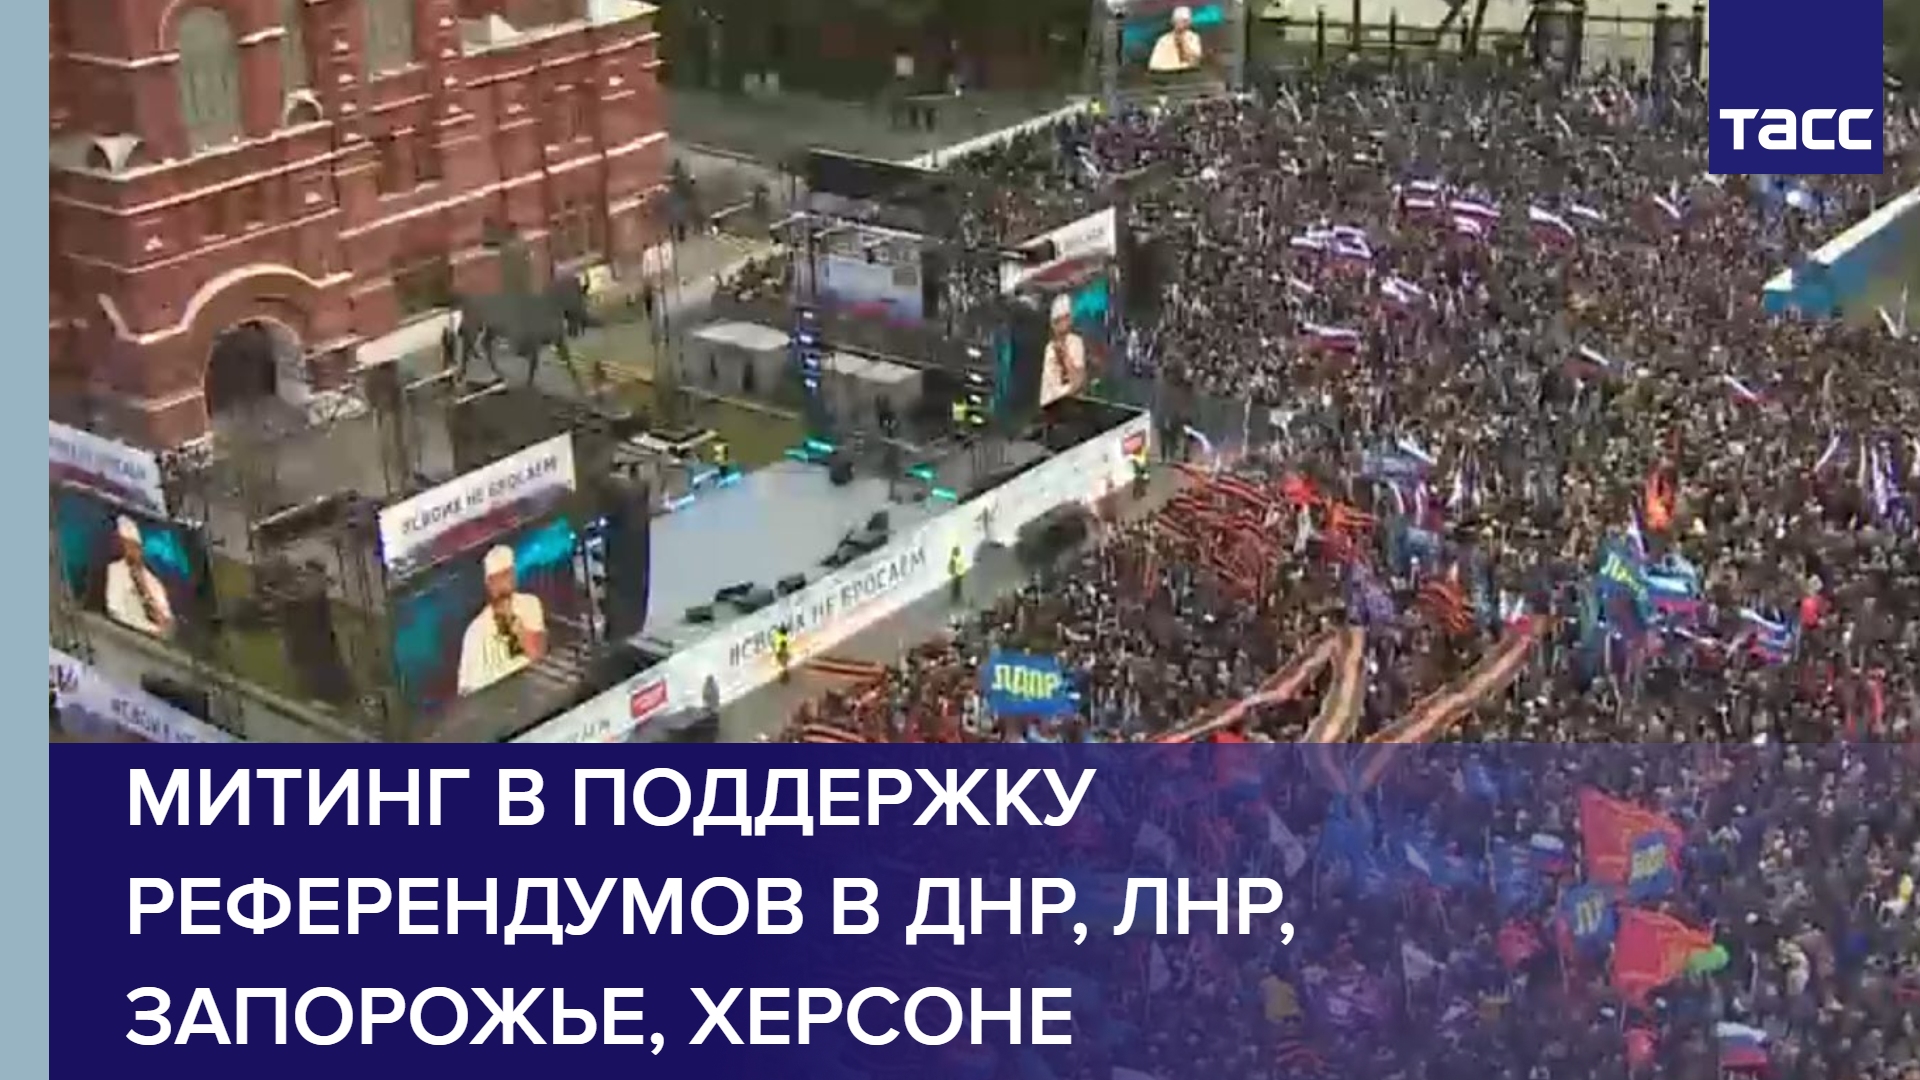 Митинг в поддержку референдумов в ДНР, ЛНР, Запорожье, Херсоне